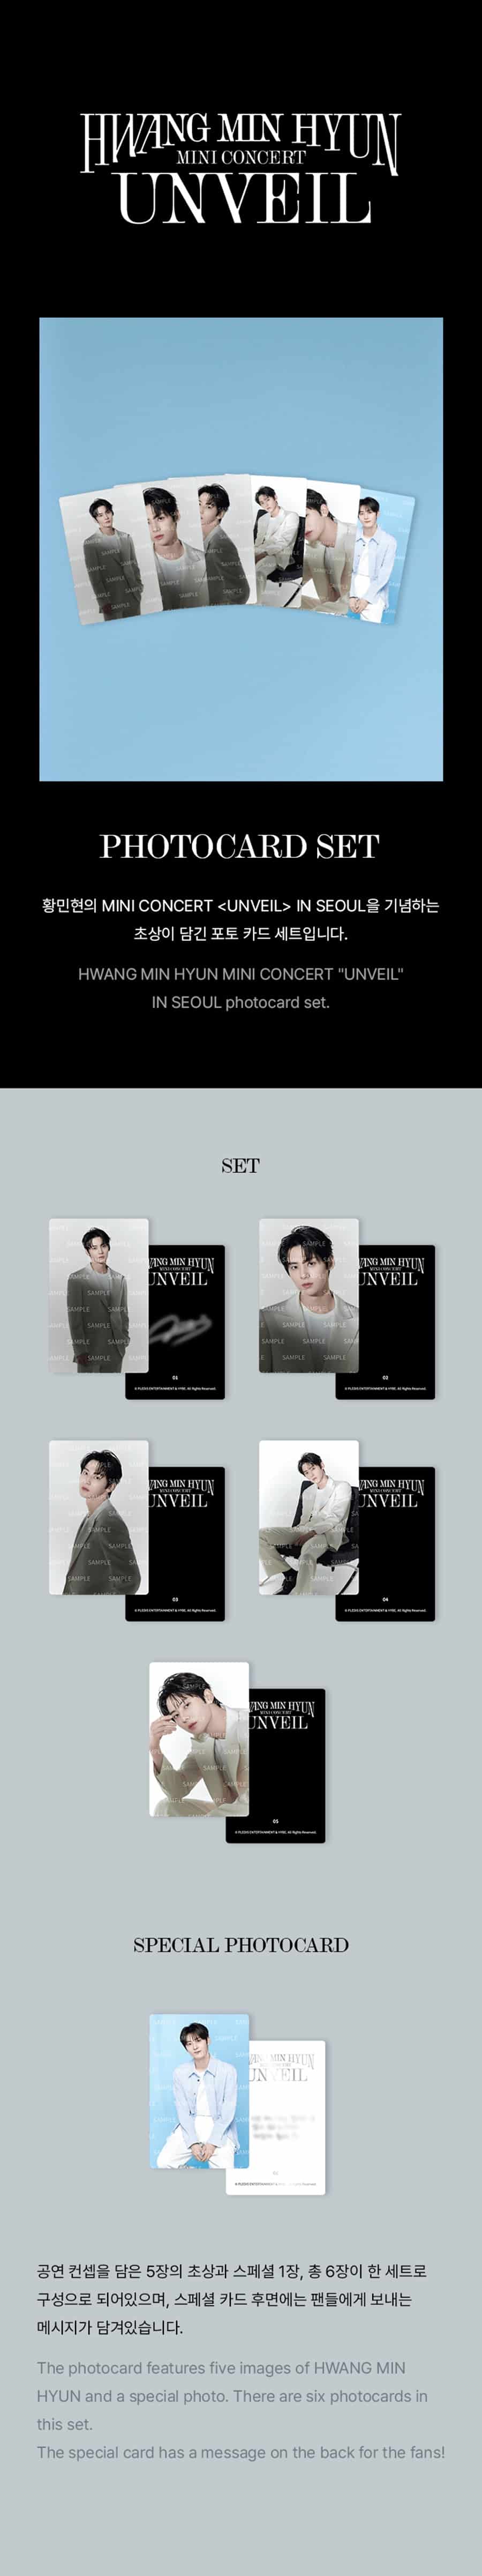 hwang-min-hyun-photo-card-set-wholesales